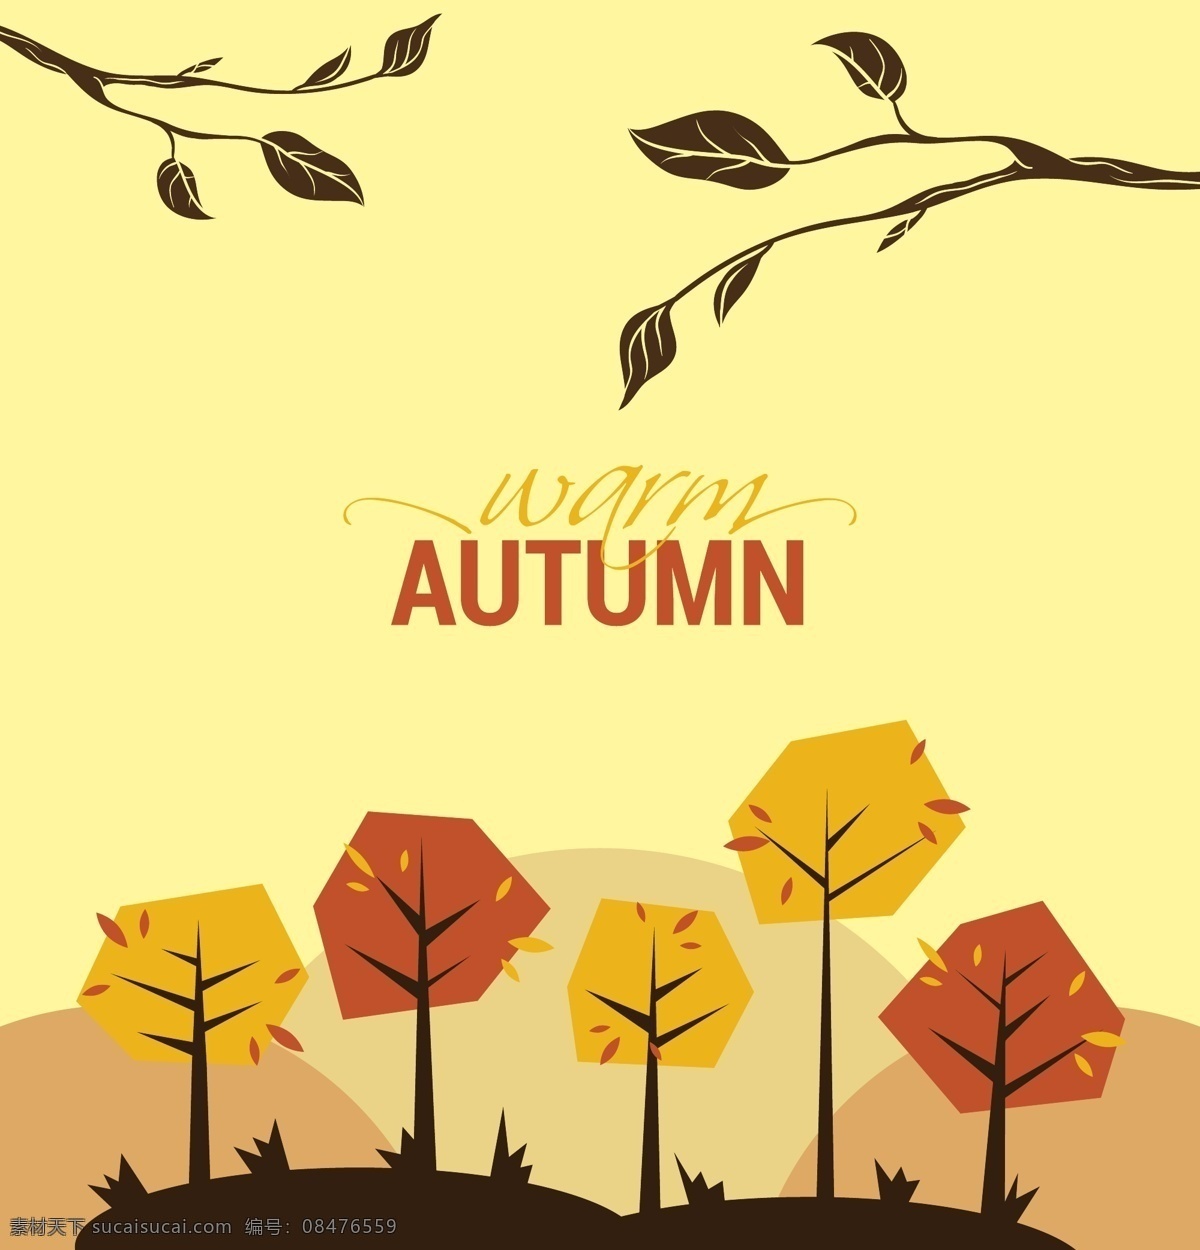 秋天 景色 背景 装饰 创意 卡通 矢量素材 背景素材 设计素材